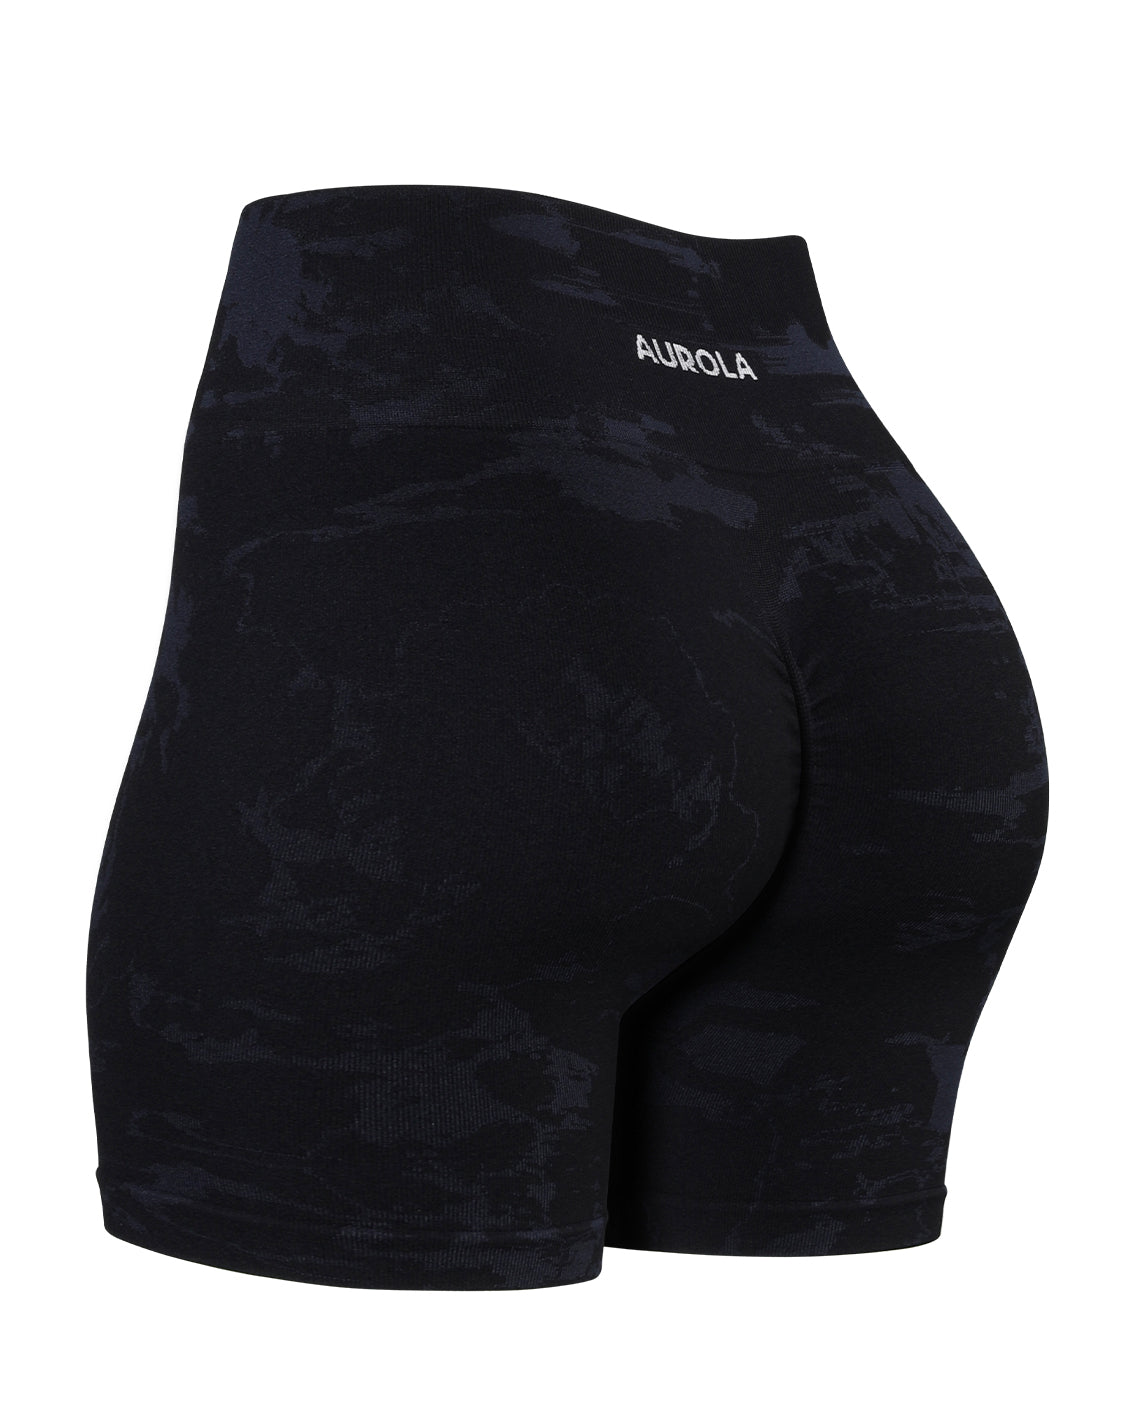 AUROLA Unbridled Imagination Shorts - Black / XS